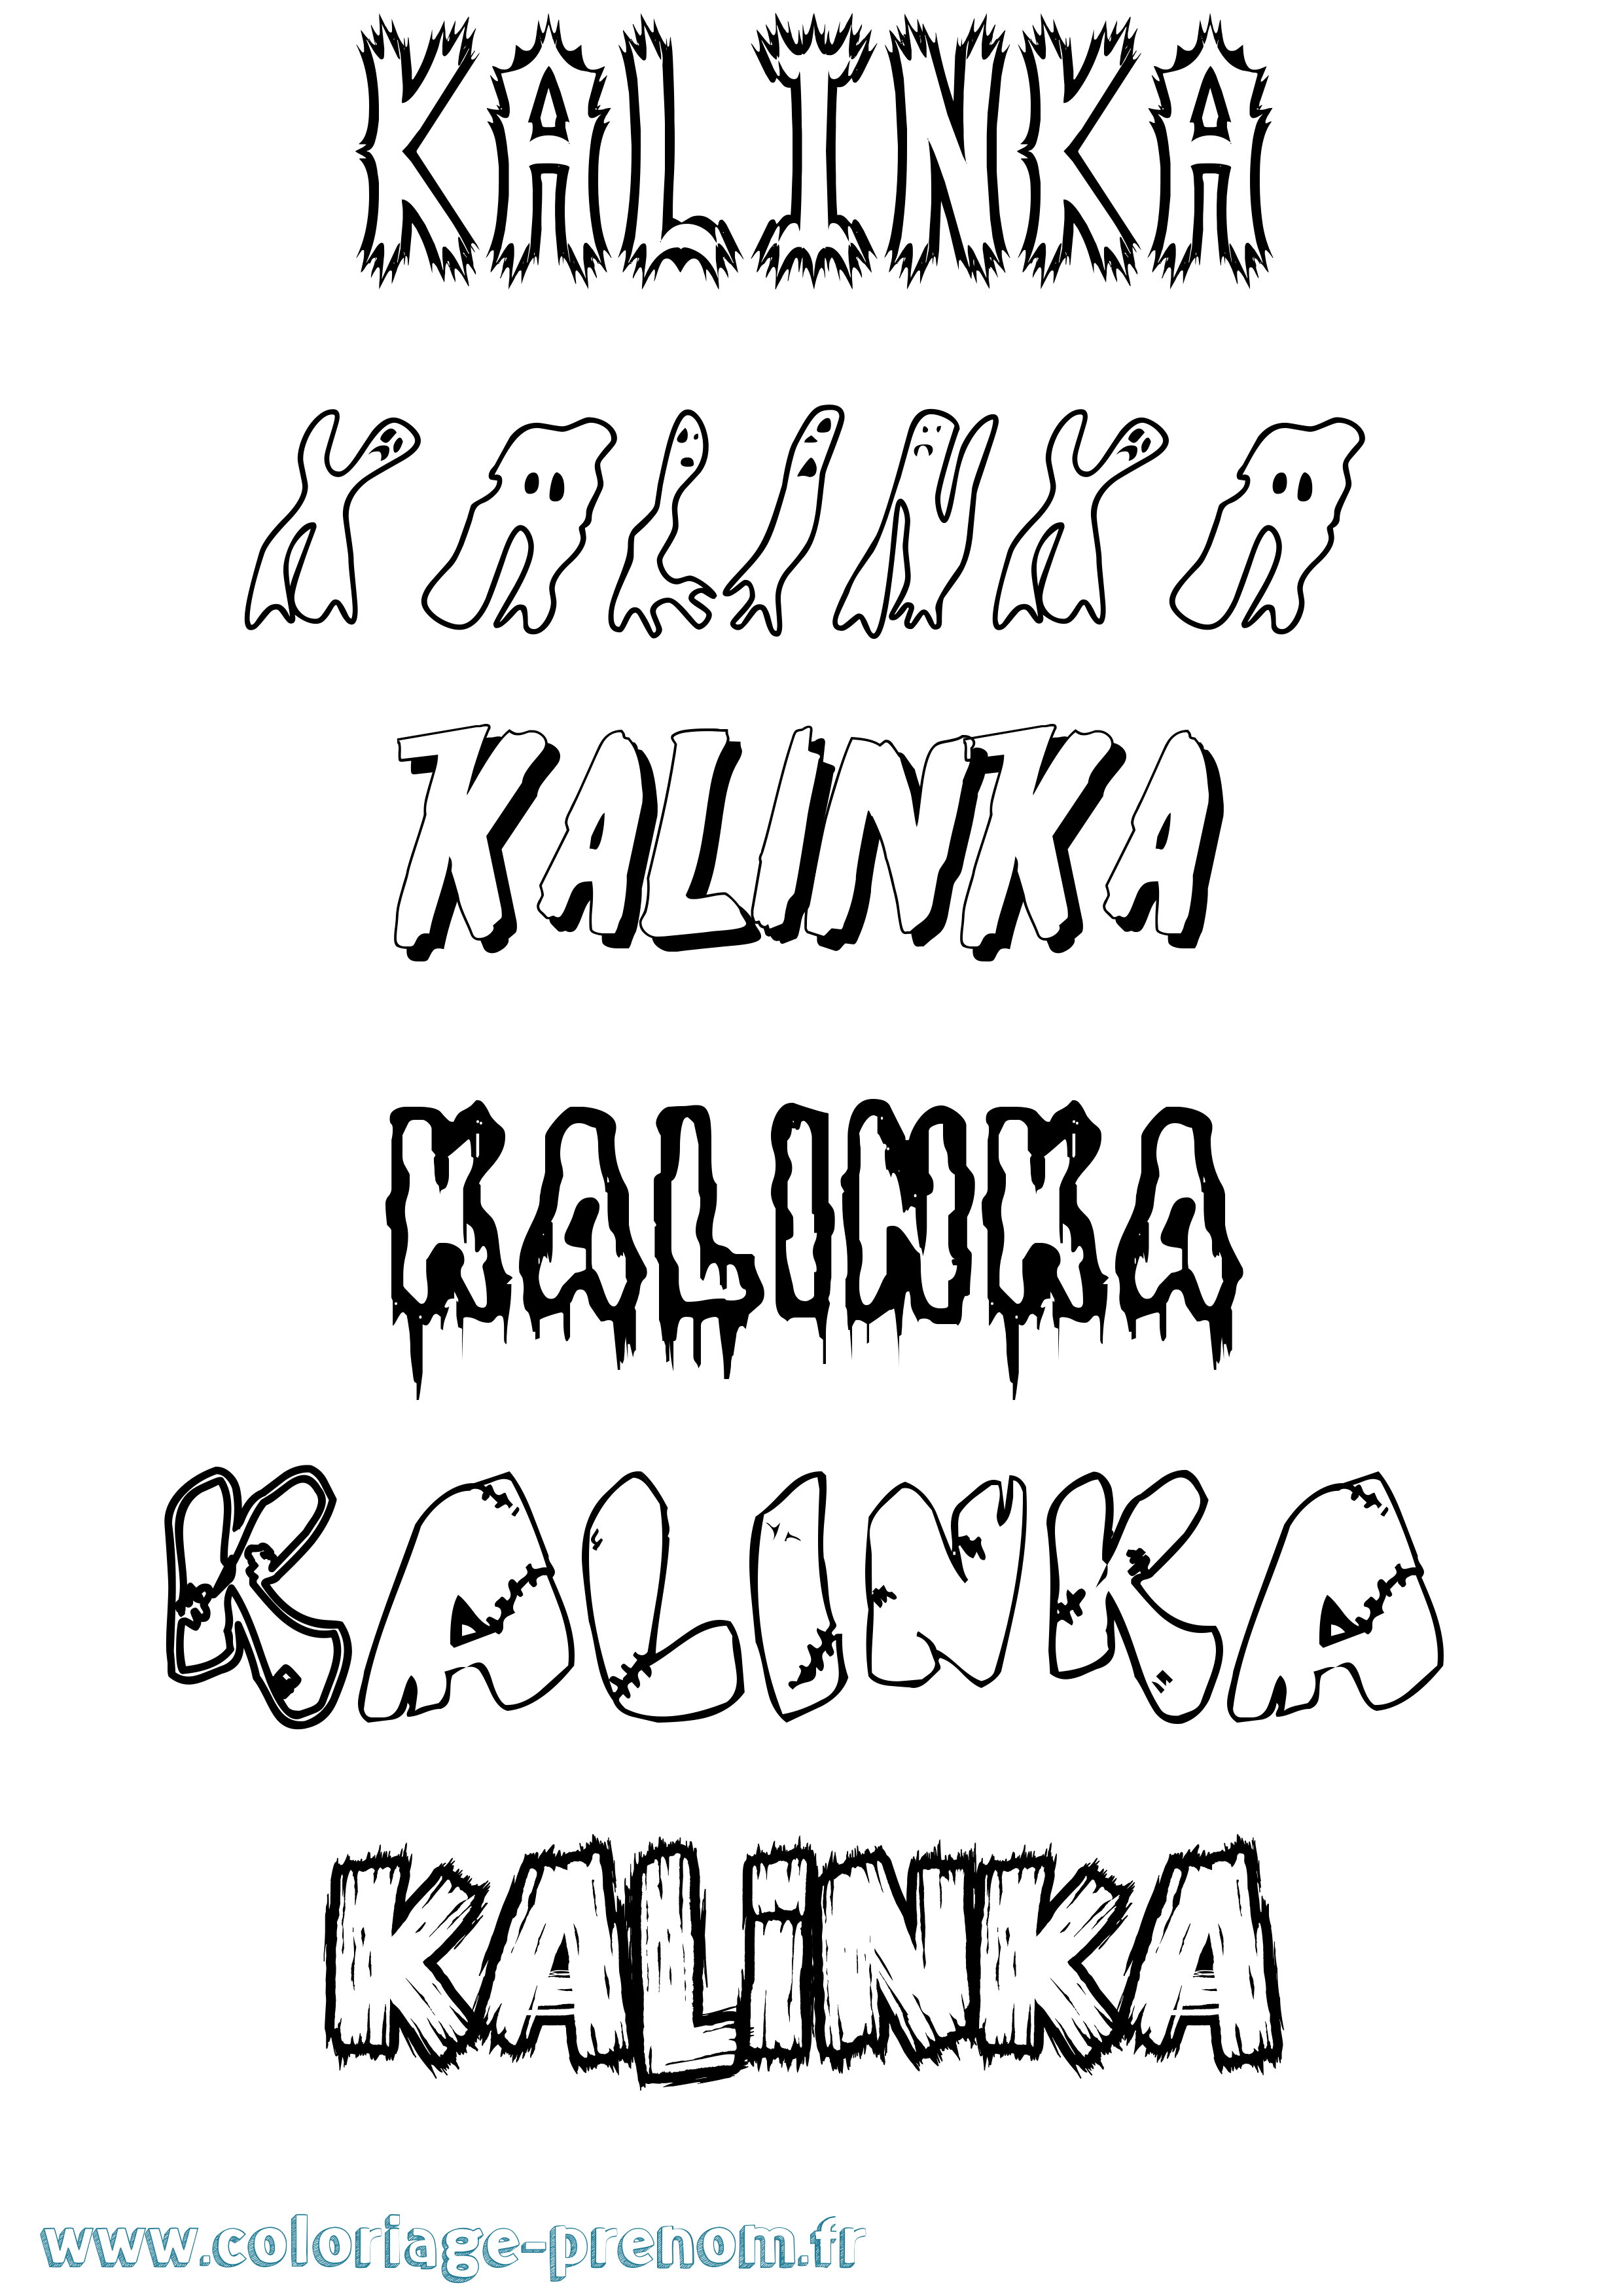 Coloriage prénom Kalinka Frisson